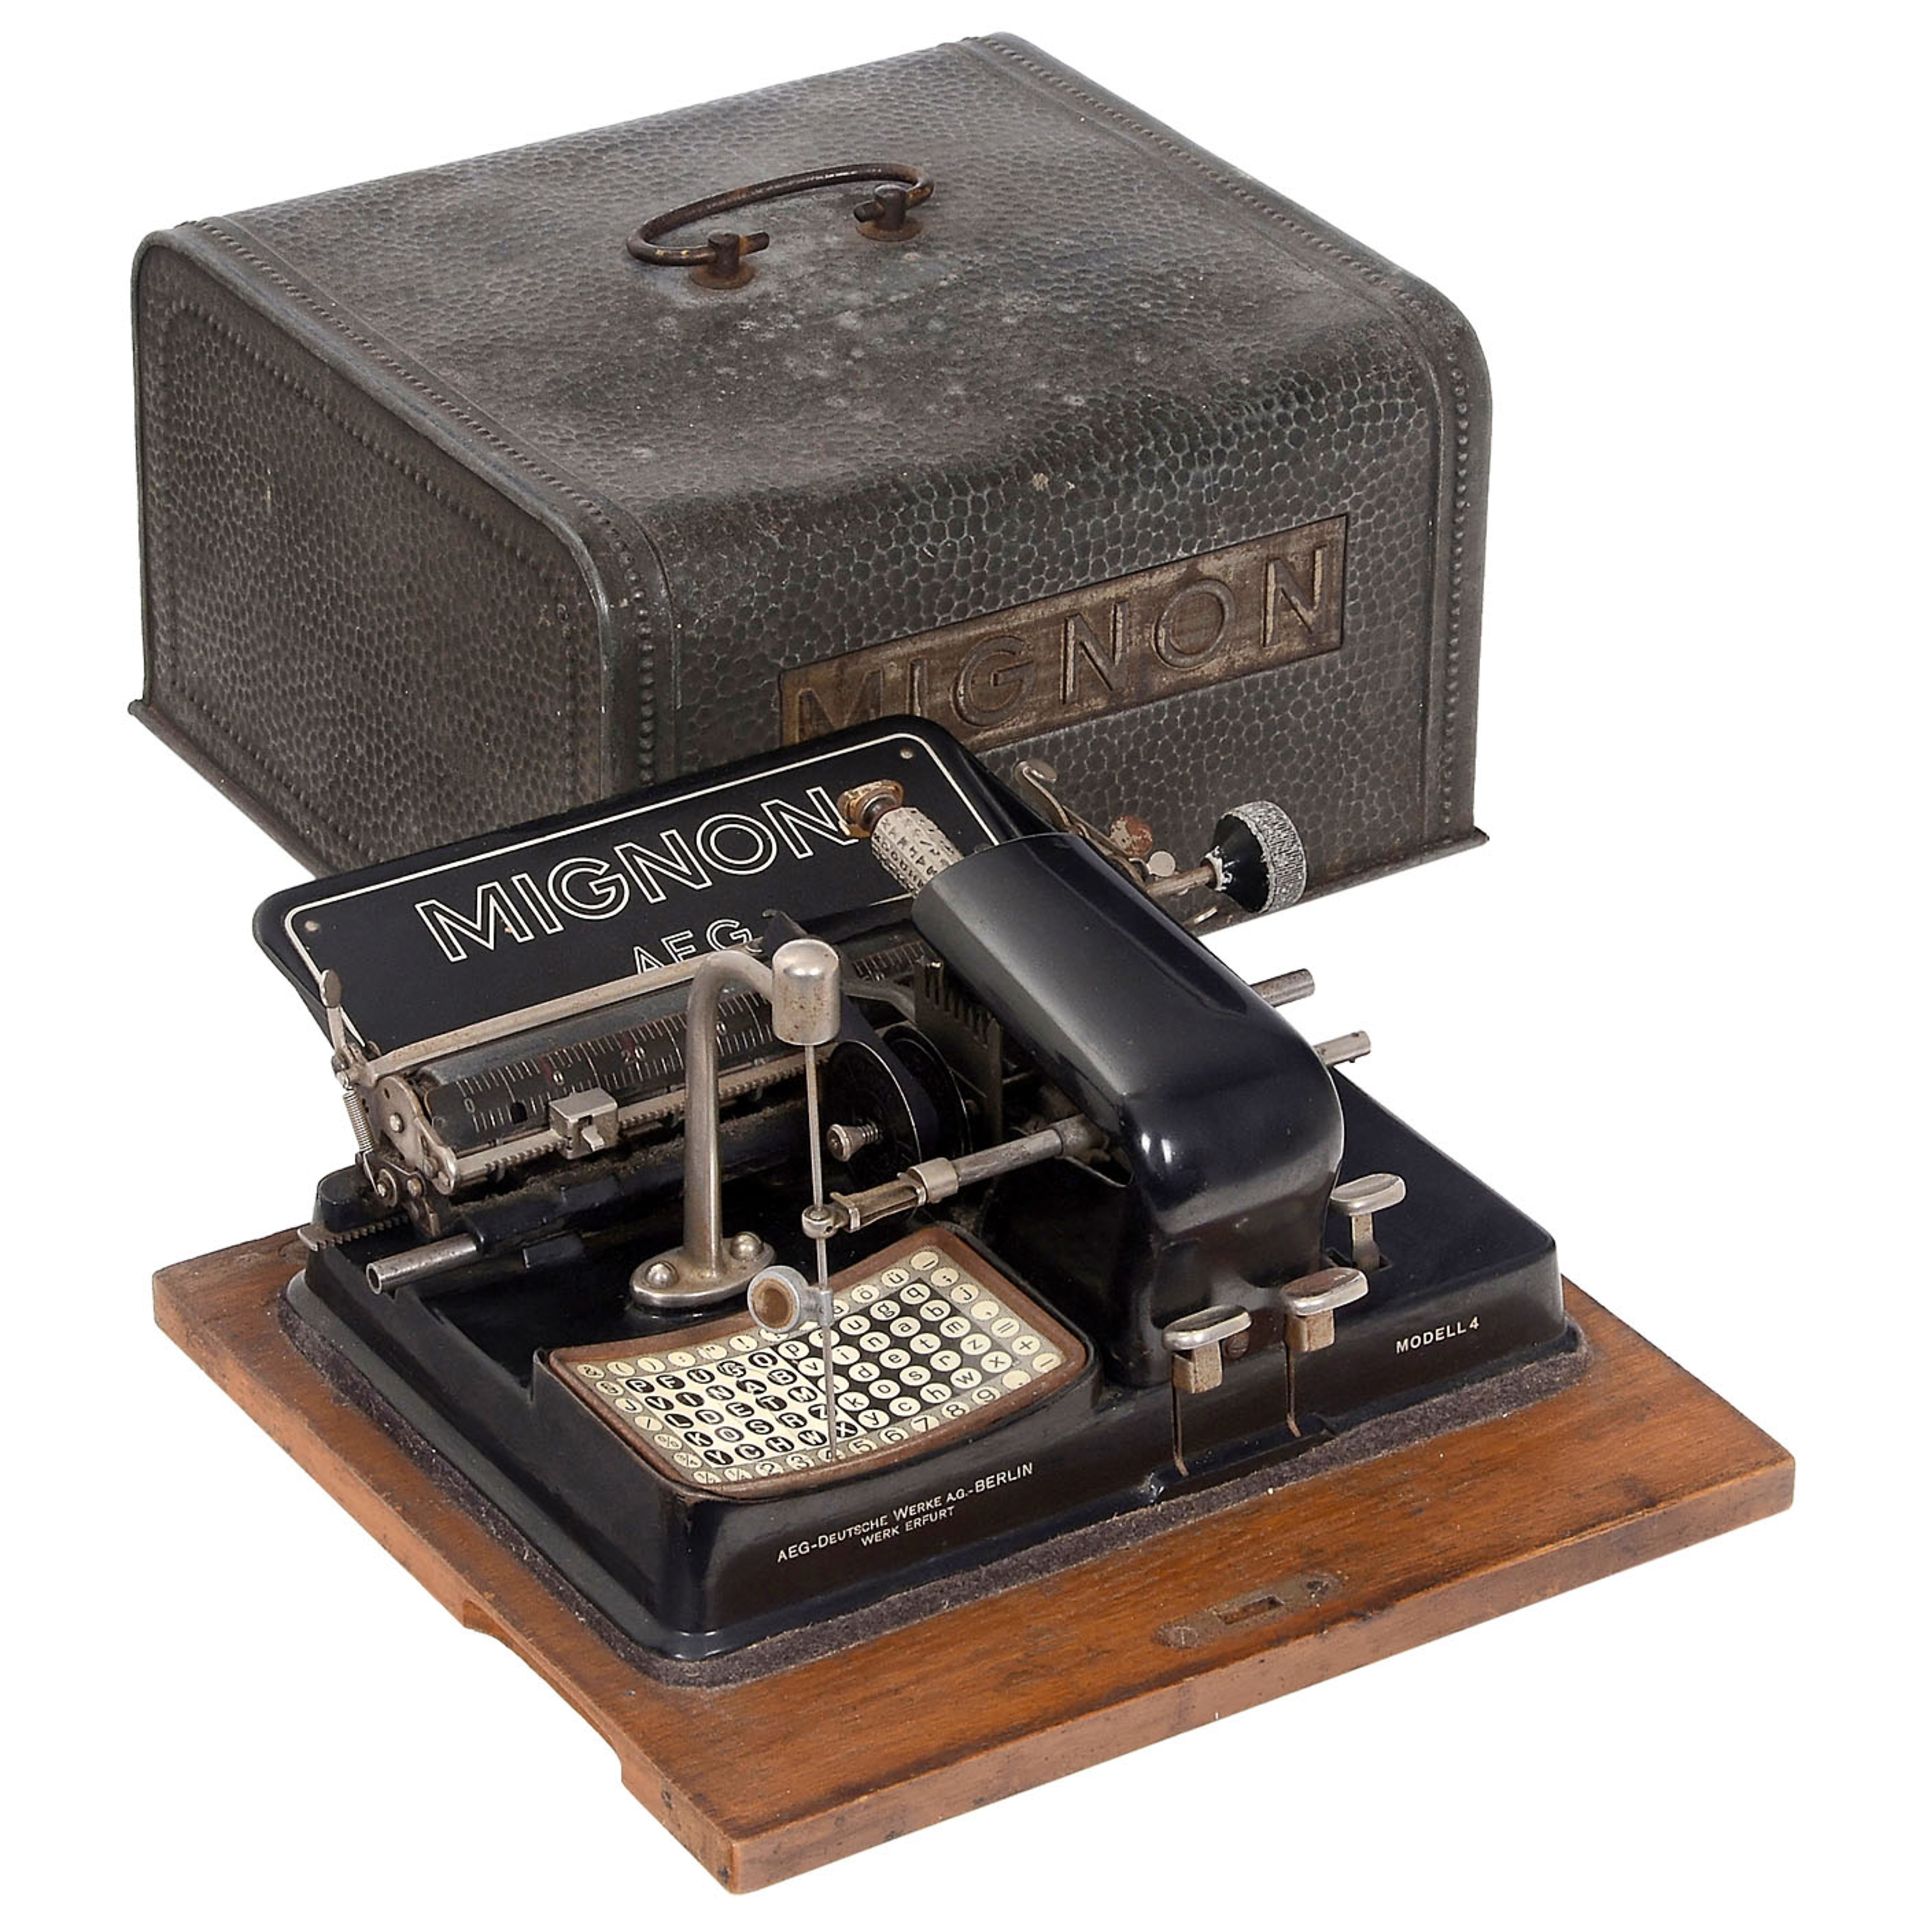 2 Mignon Typewriters and an Odhner Calculating Machine - Bild 2 aus 4